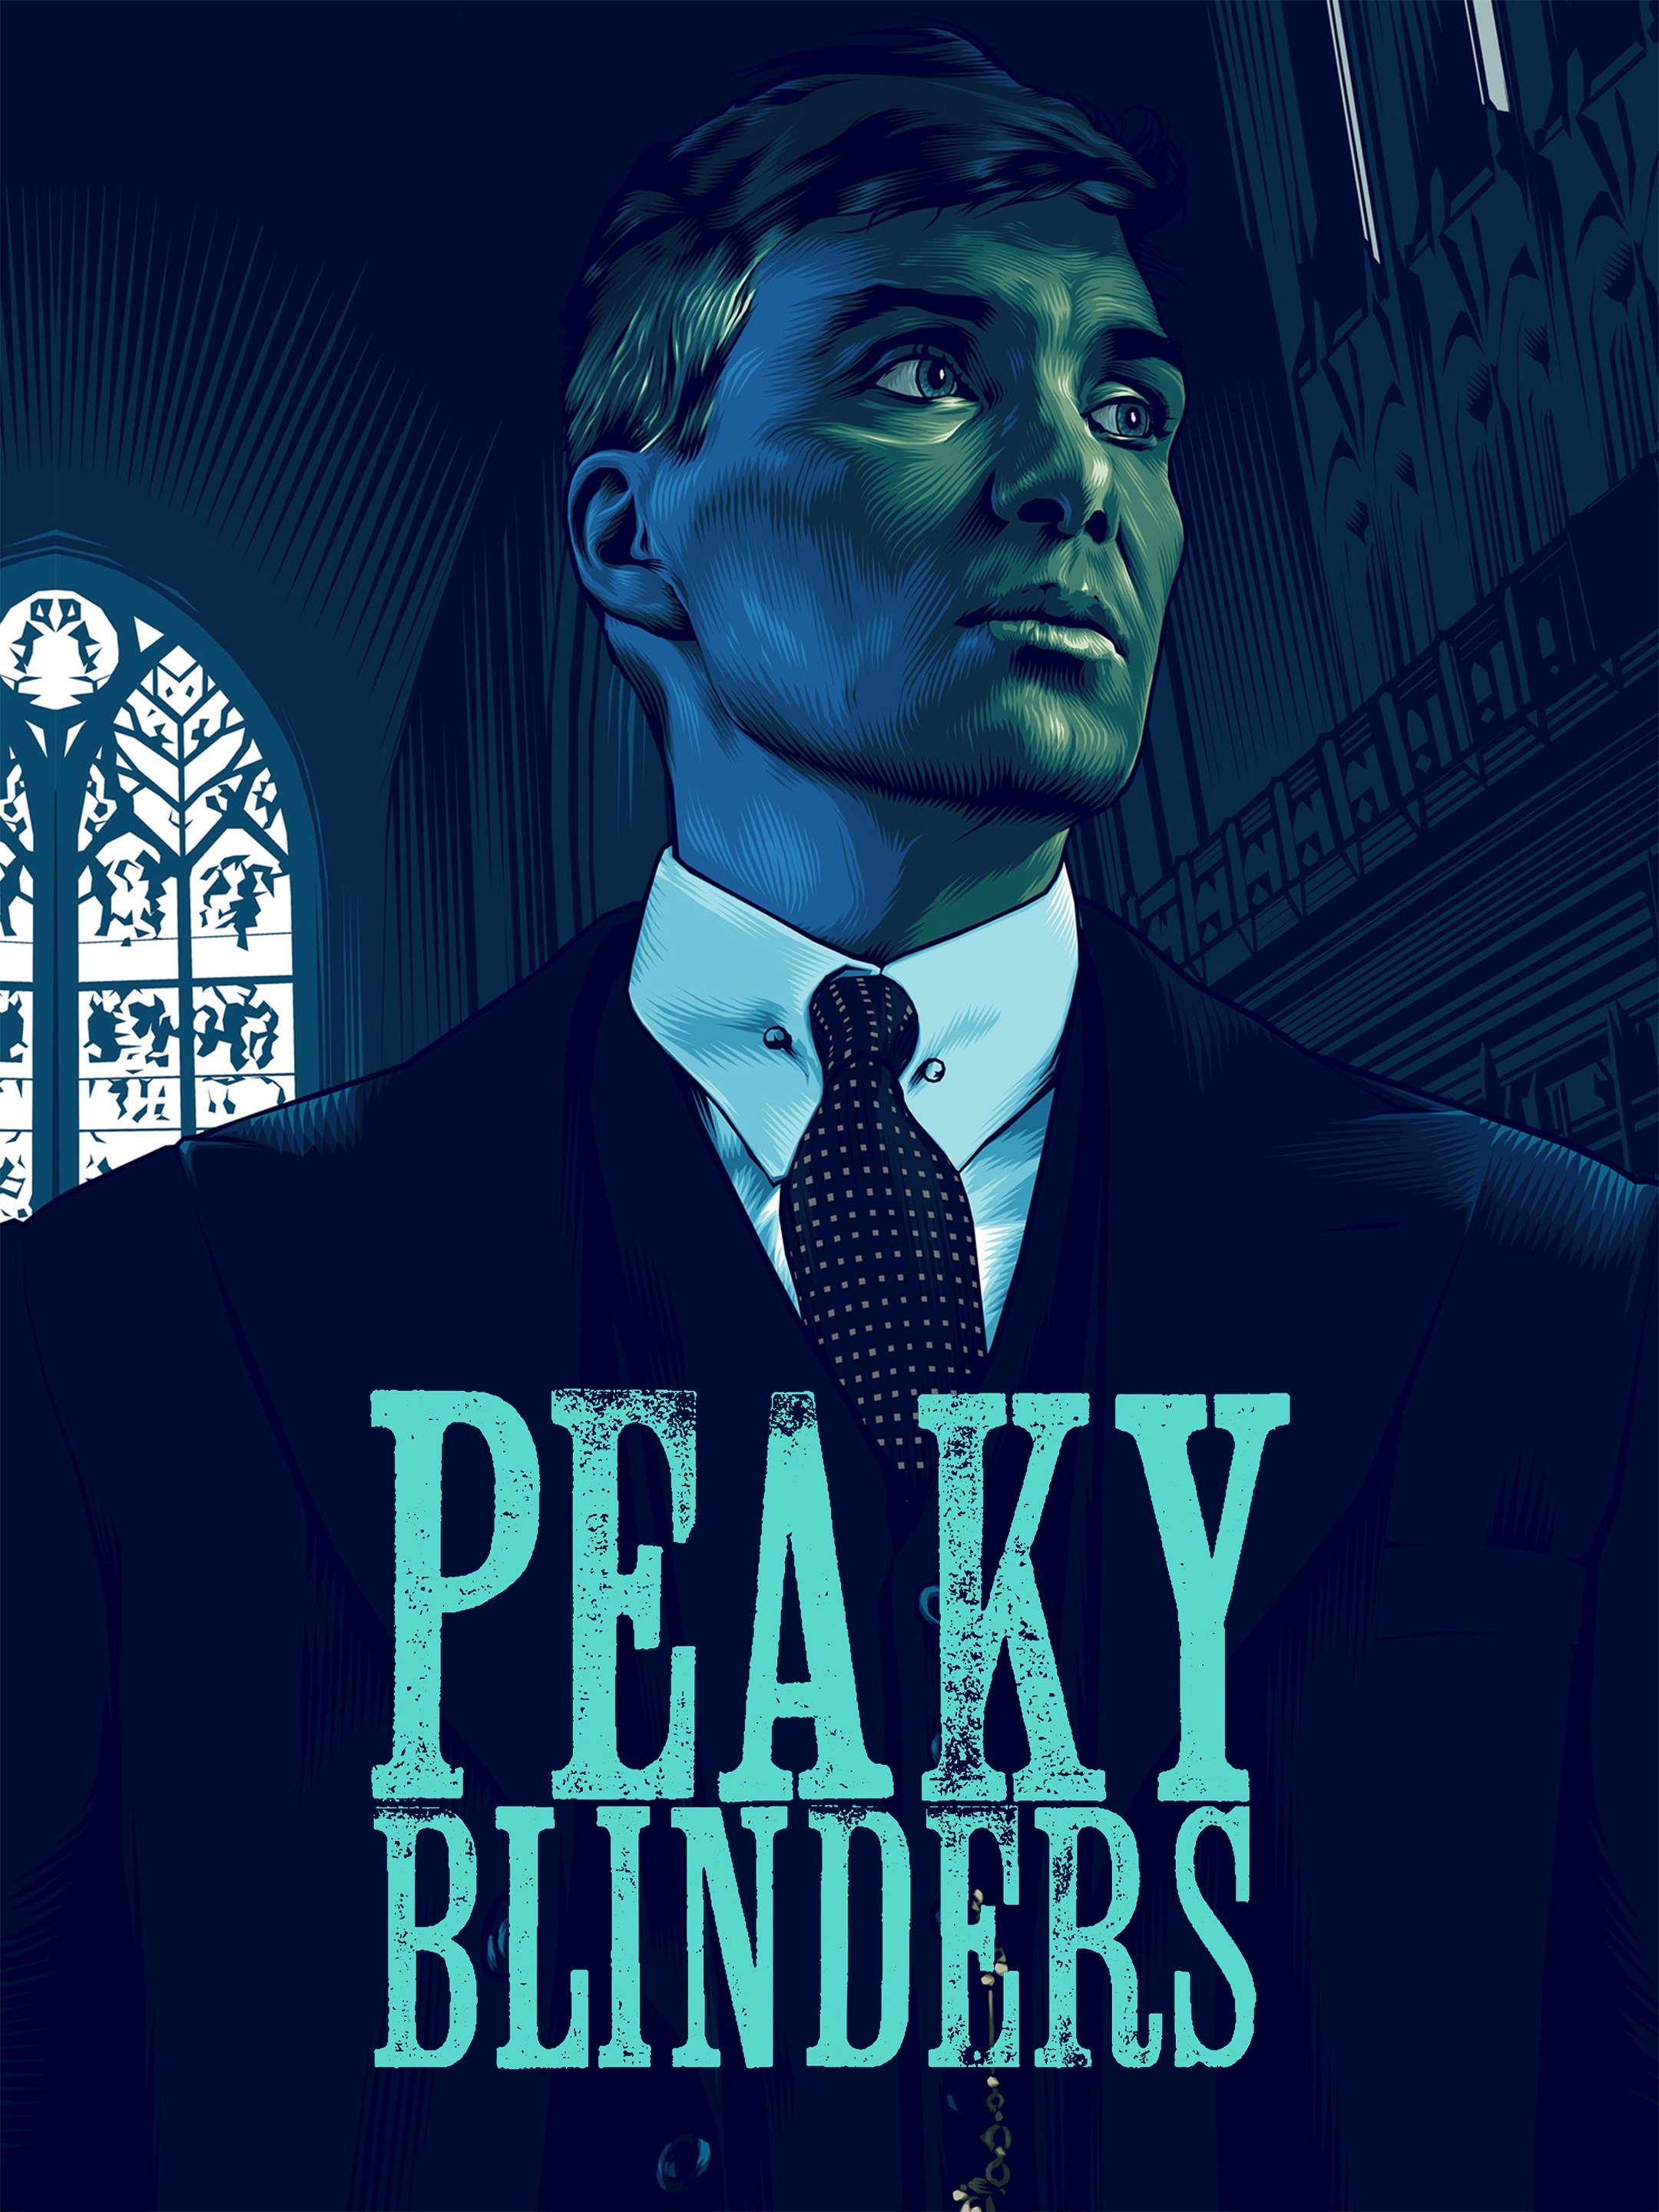 Peaky Blinders Series 6 